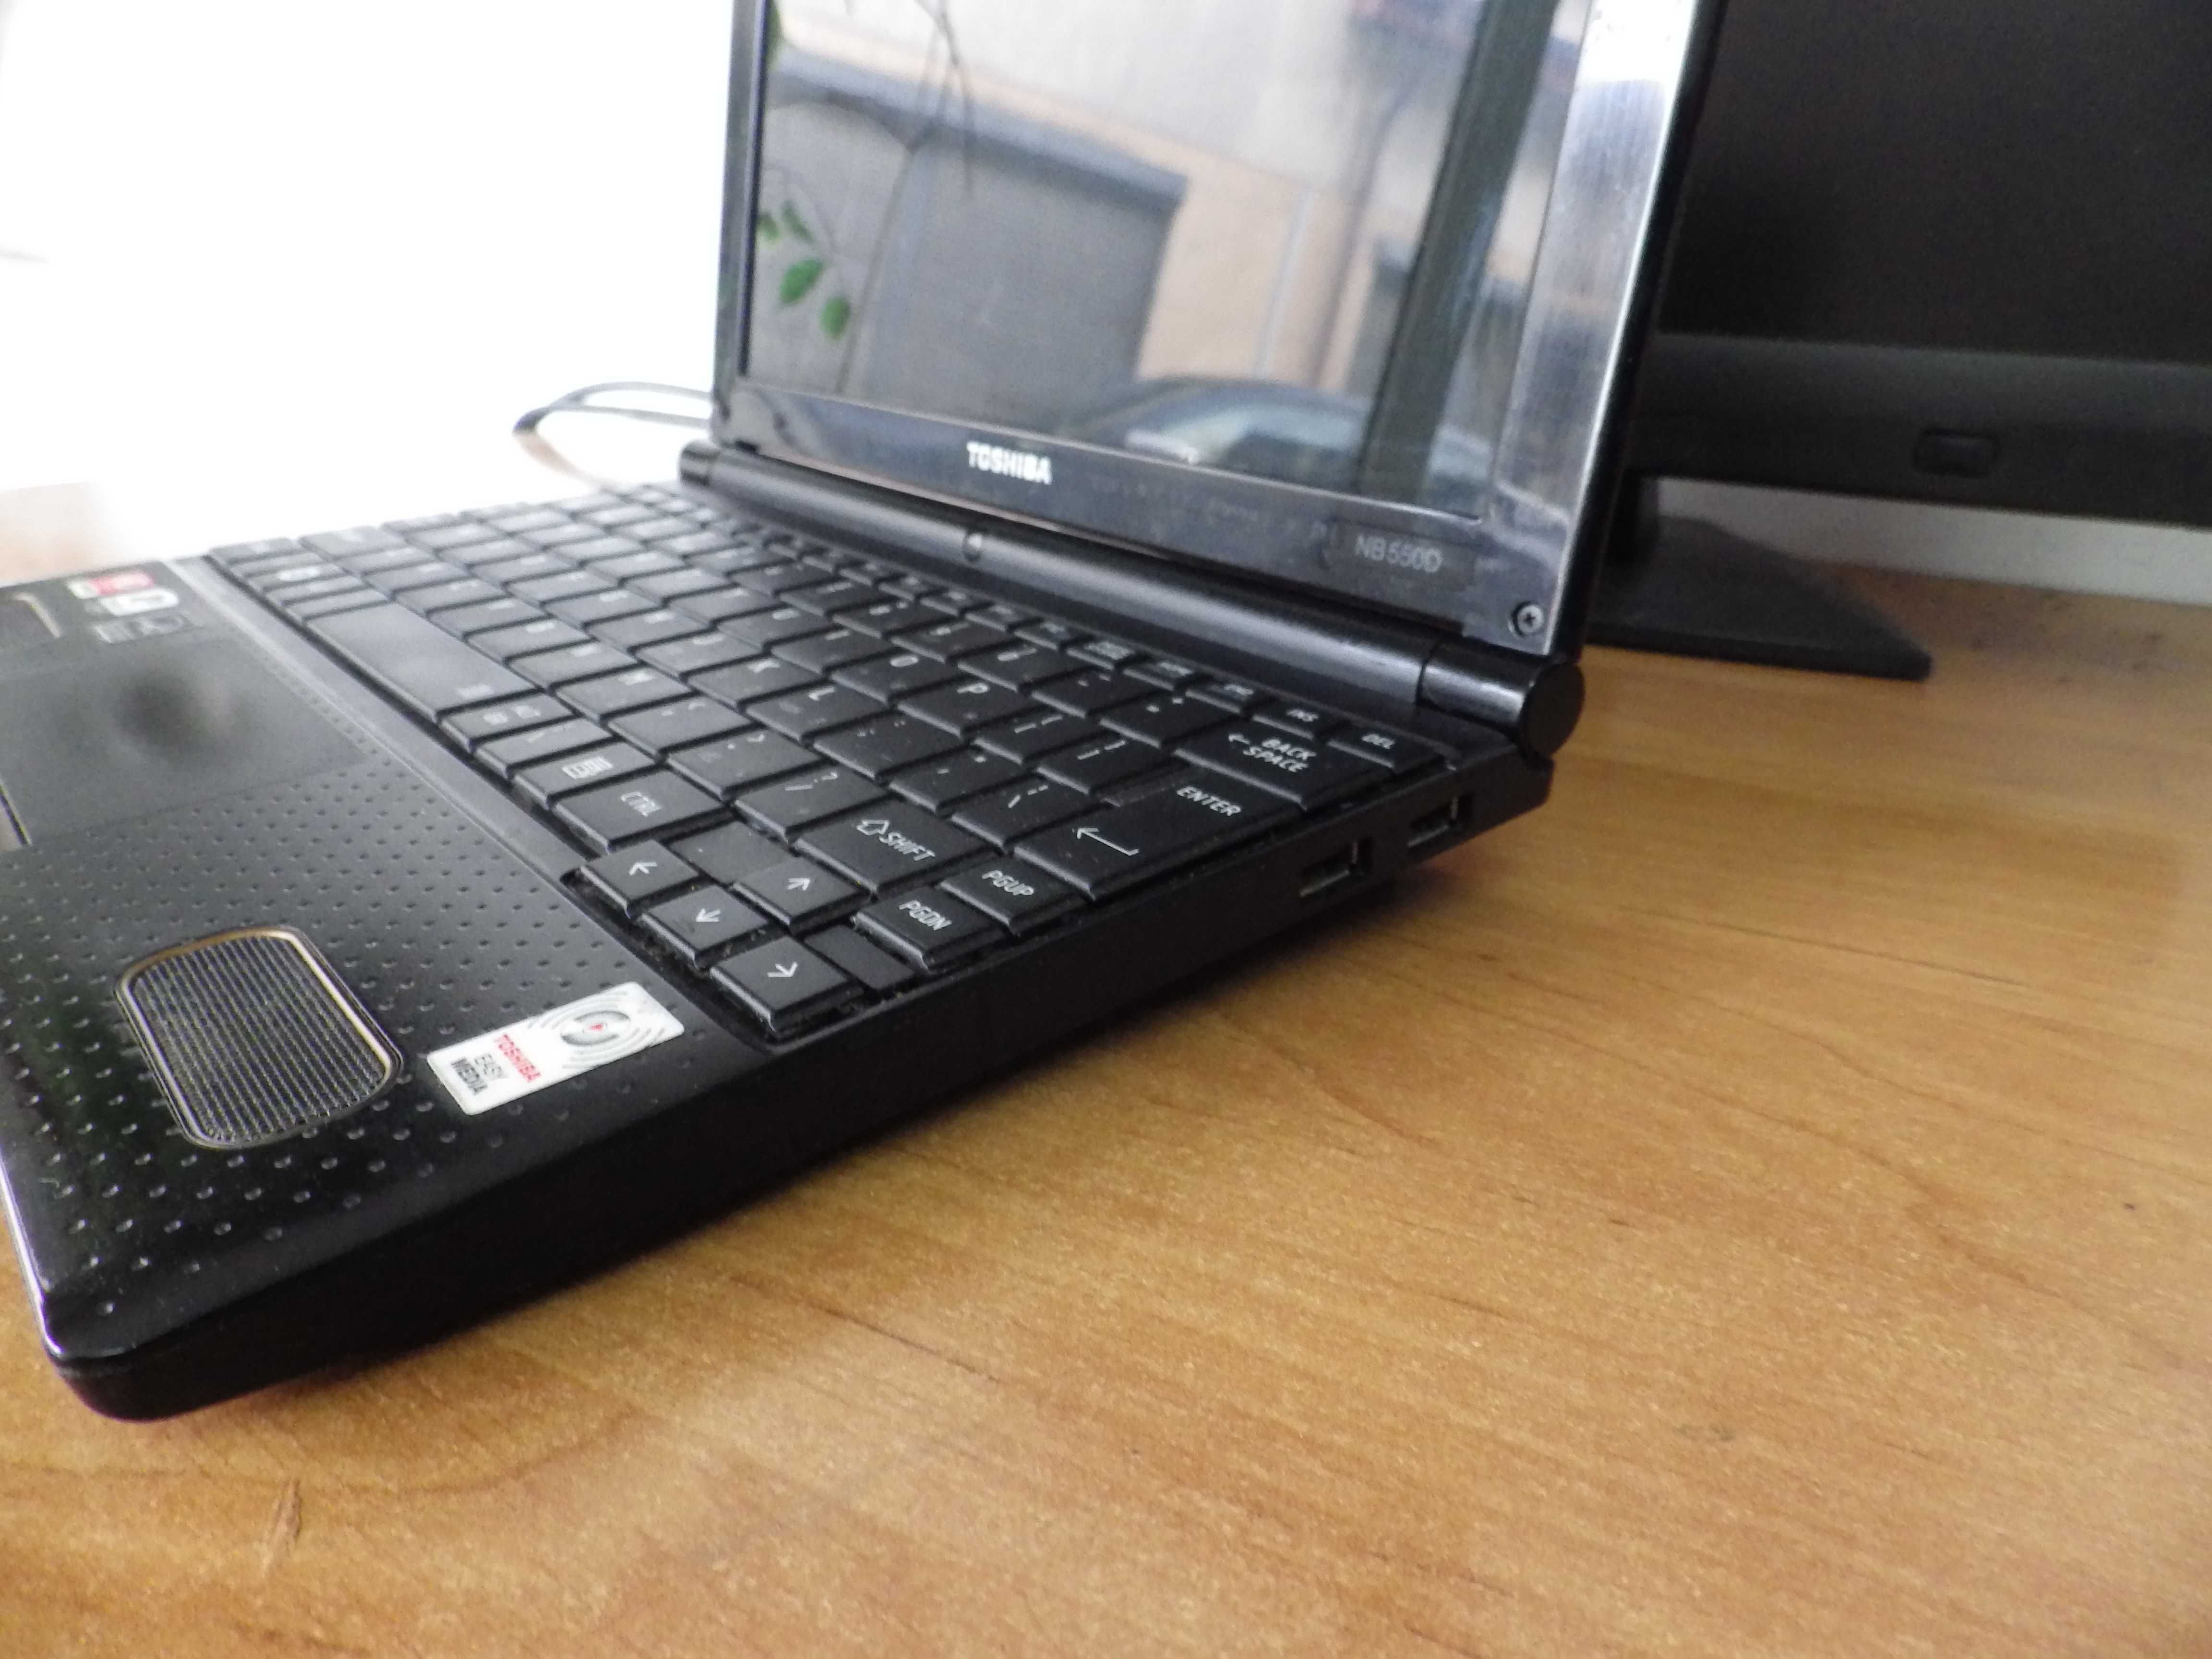 Laptop Toshiba NB550D